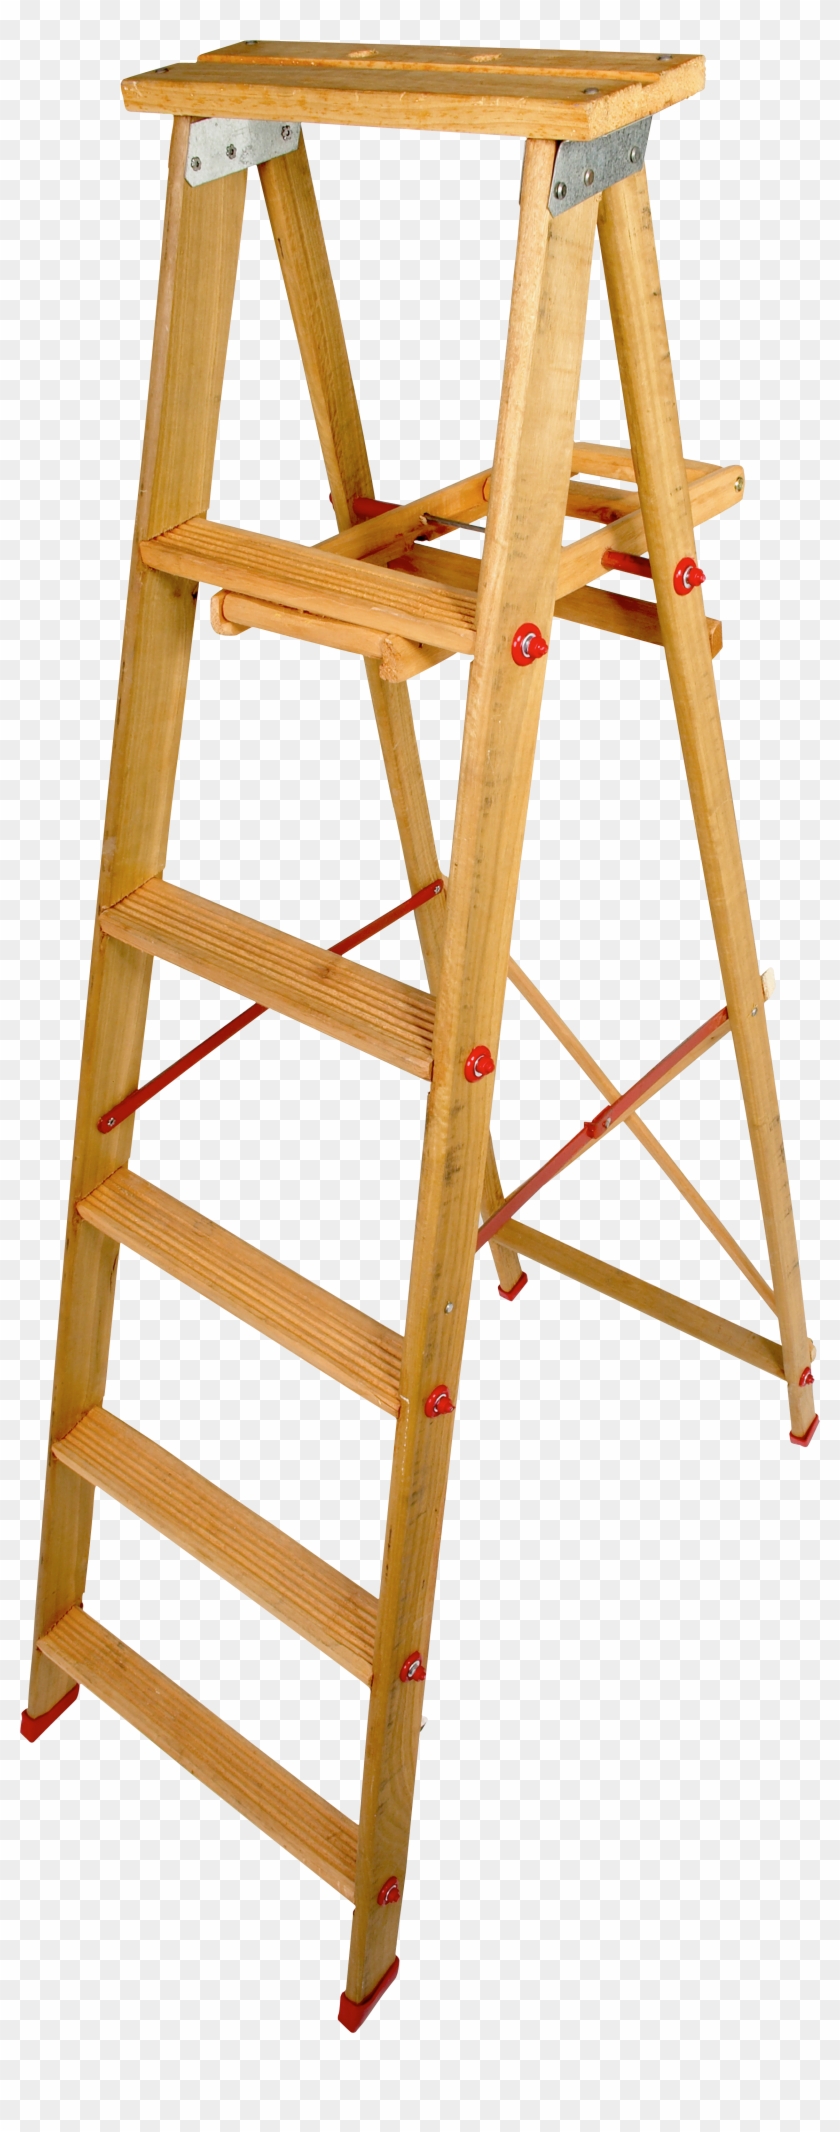 Wood Step Ladder Png - Step Ladder Transparent Background Clipart #469287